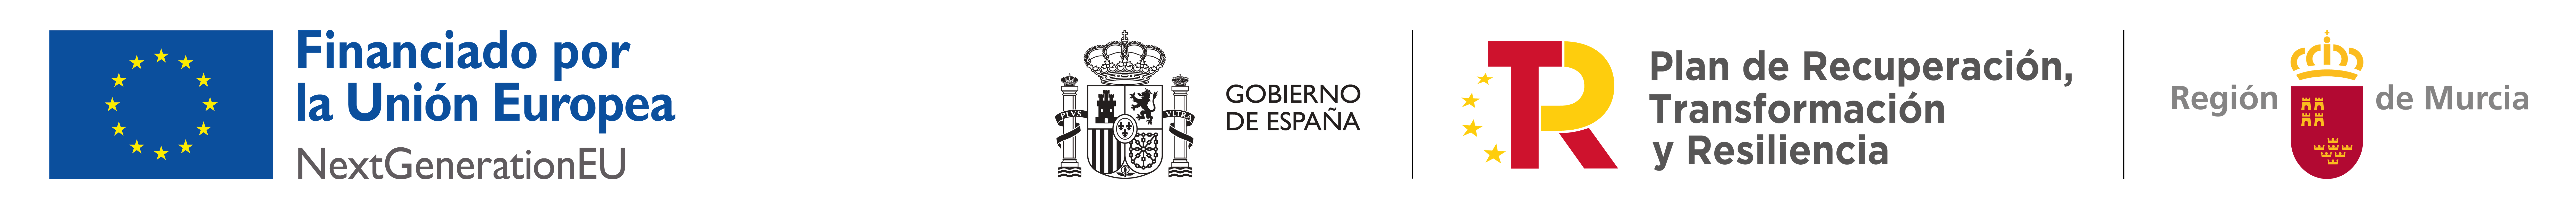 Financiado por la Union europea. NextGenerationEu - Gobierno de España. Plan de Recuperación, Transformación y Resiliencia - Región de Murcia